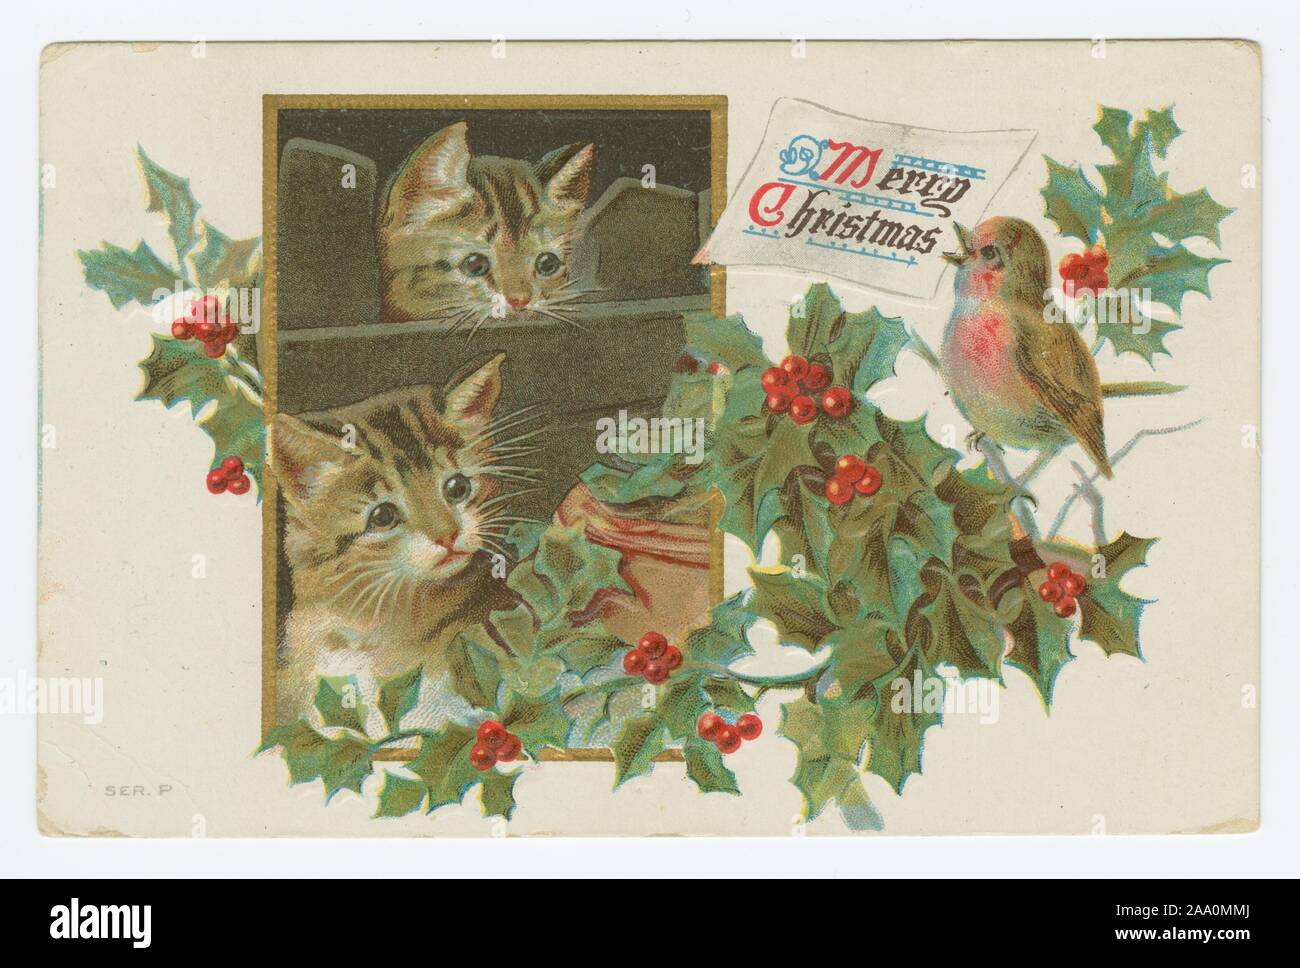 Illustrierte Postkarte von zwei Kätzchen, die durch ein Fenster auf einen Robin auf einem holly Zweig thront suchen, eine Karte, in der es heißt "Frohe Weihnachten!", 1911. Von der New York Public Library. () Stockfoto